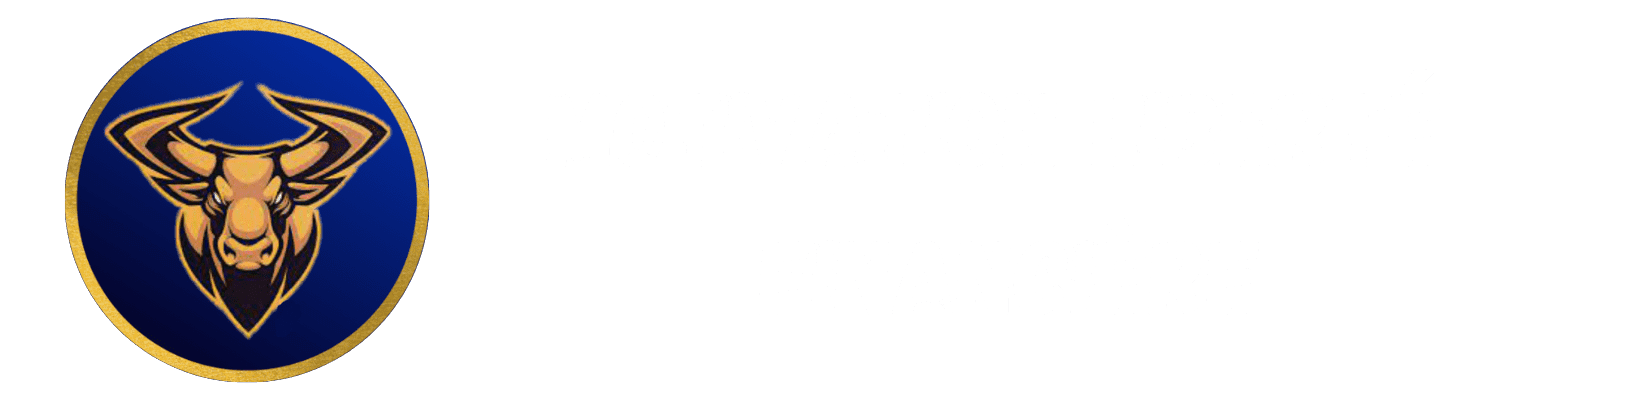 logo motivation liberté financière